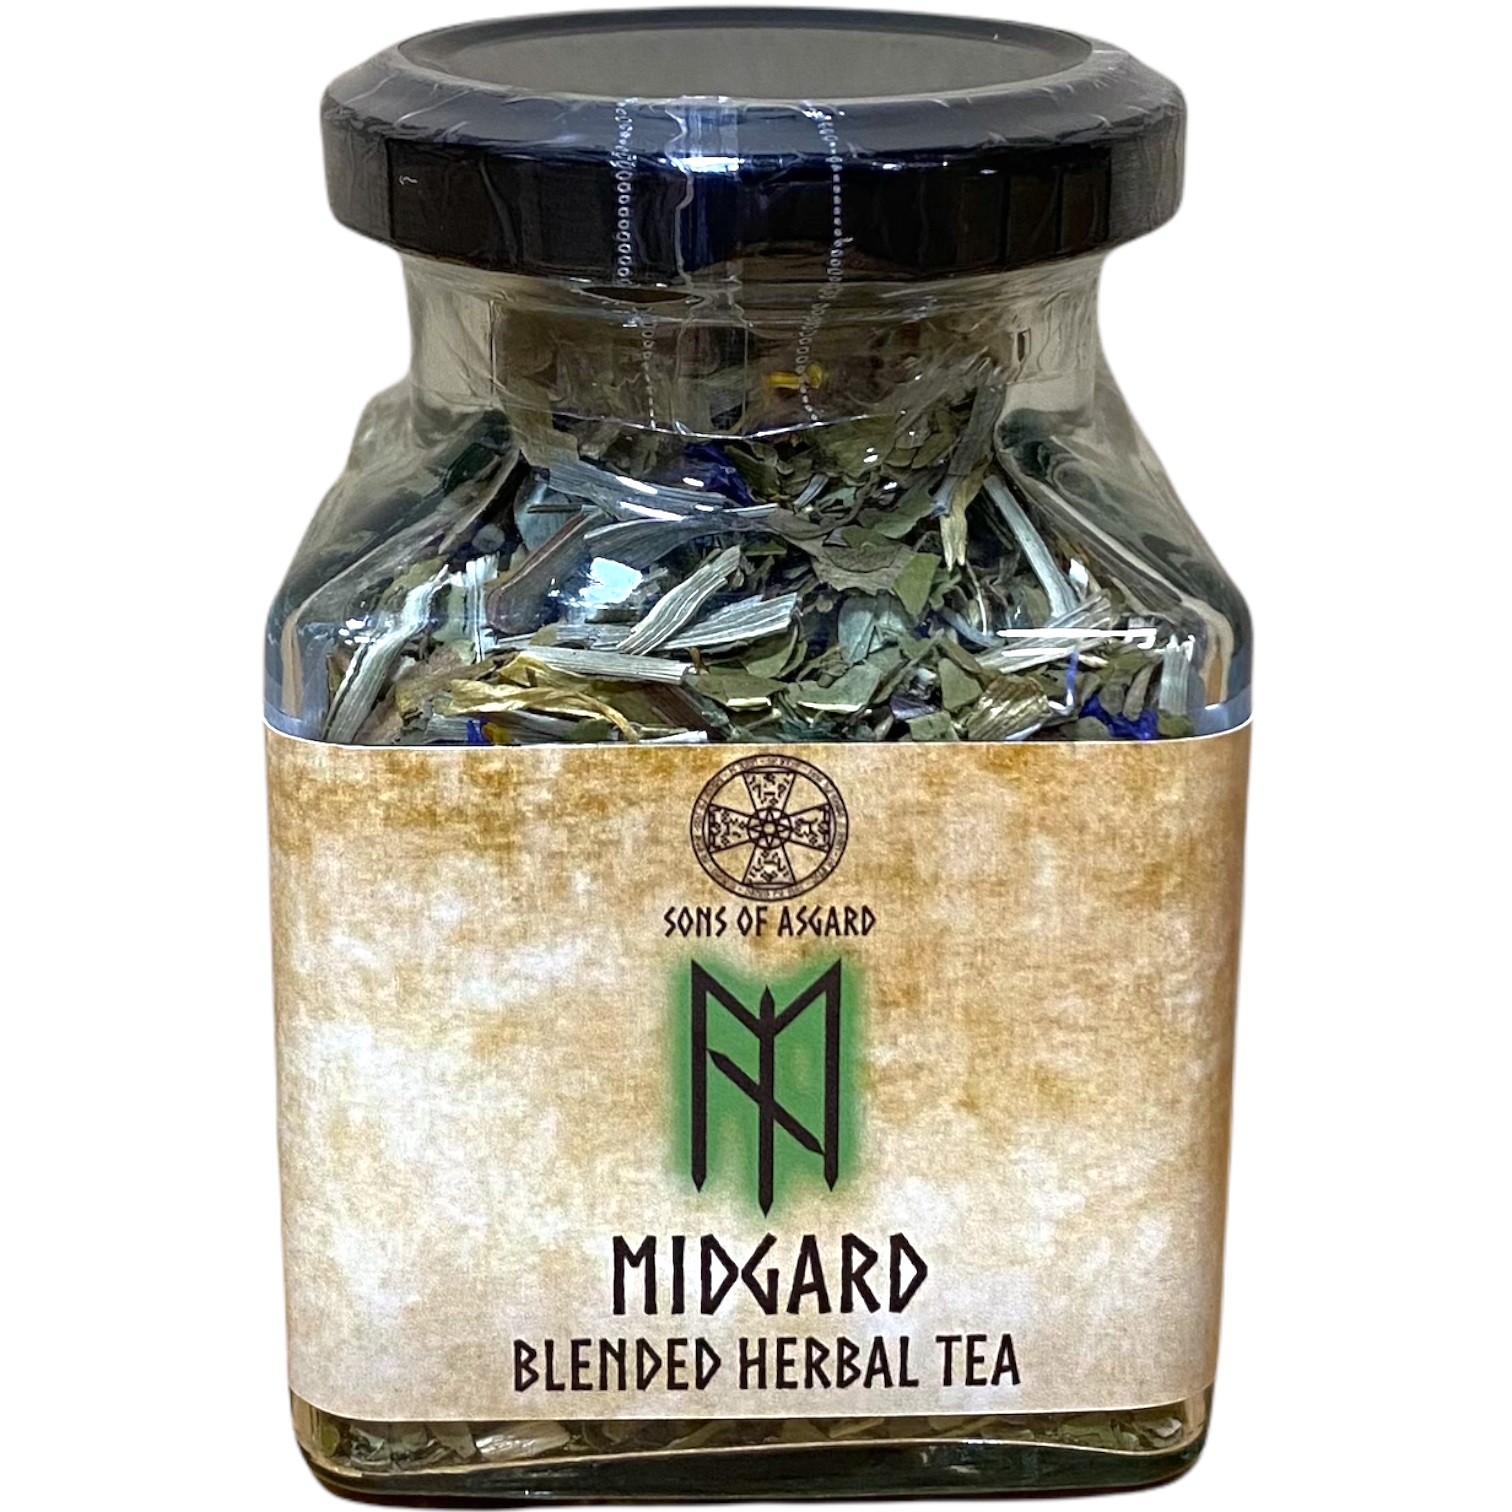 Midgard - Blended Herbal Tea